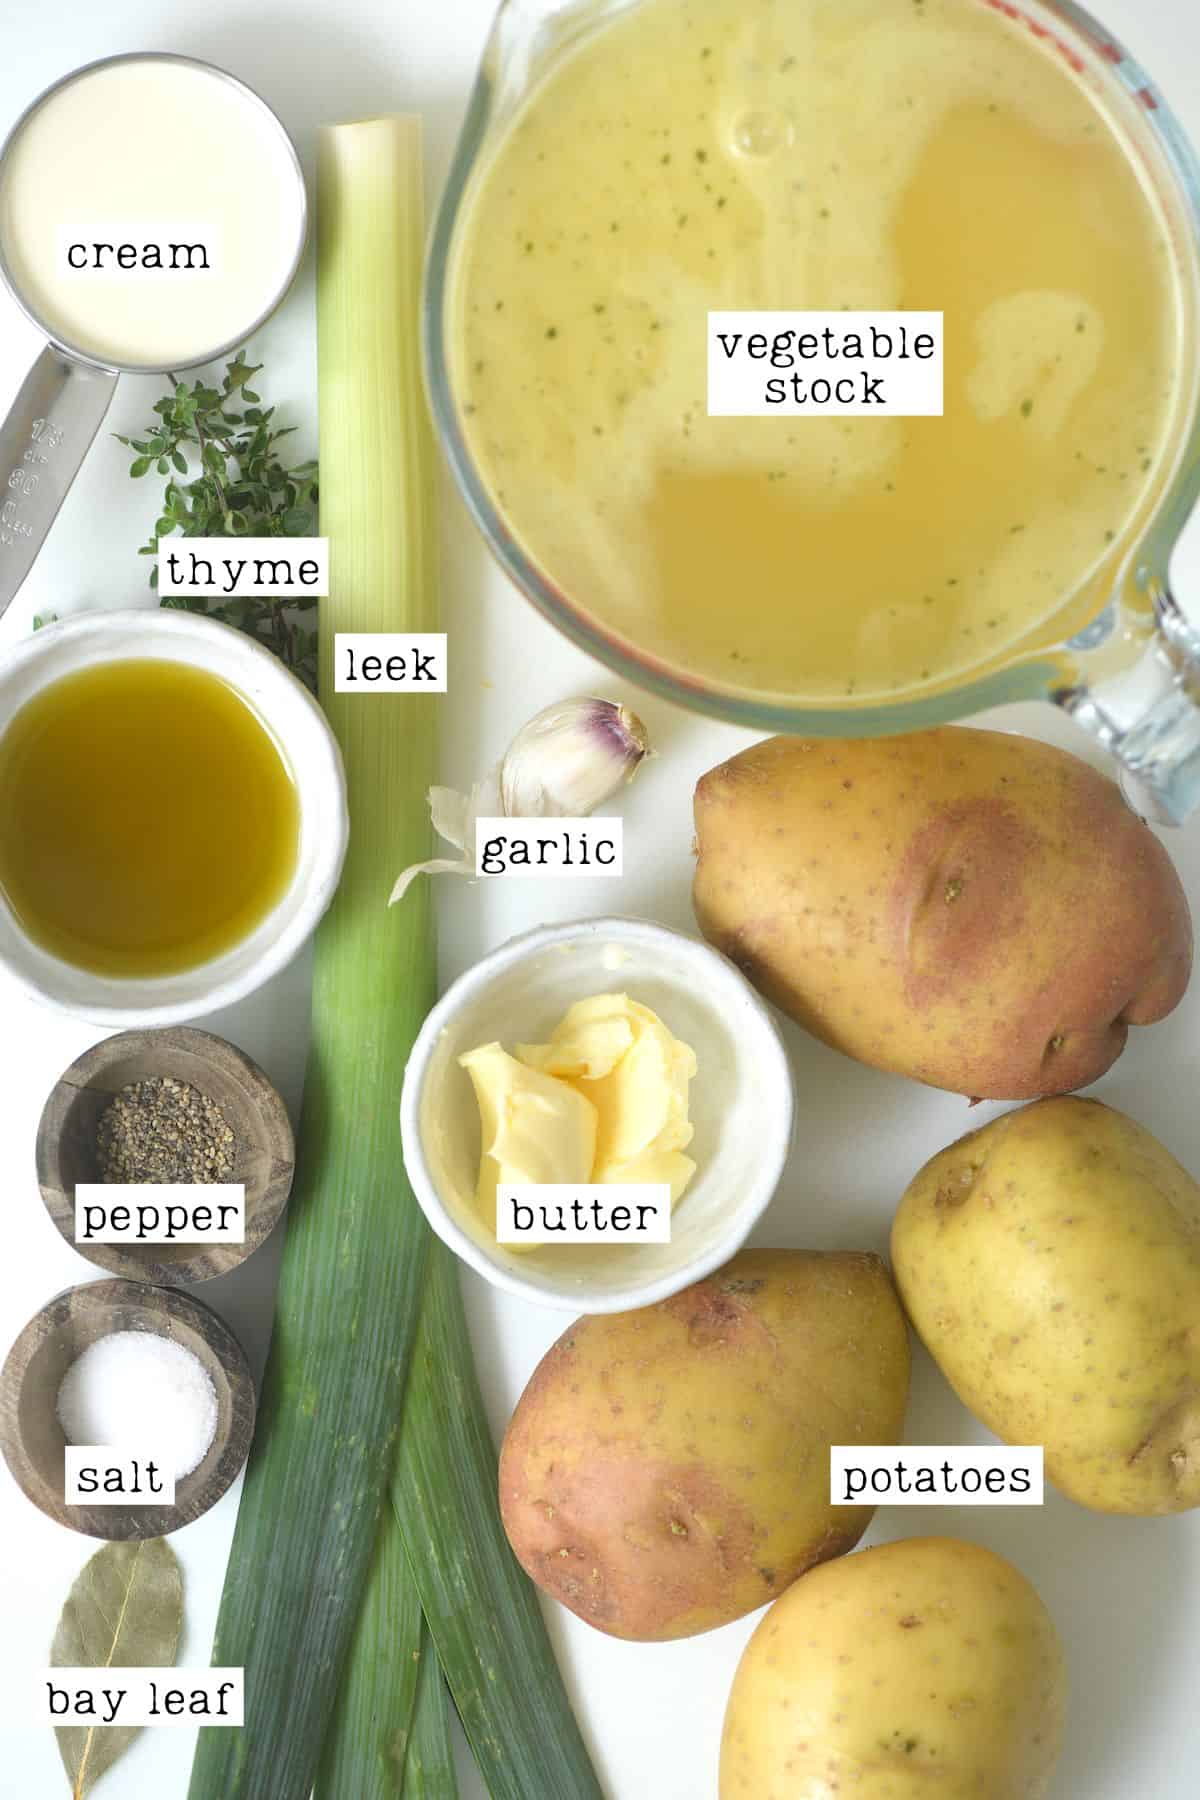 Ingredients for potato leek soup